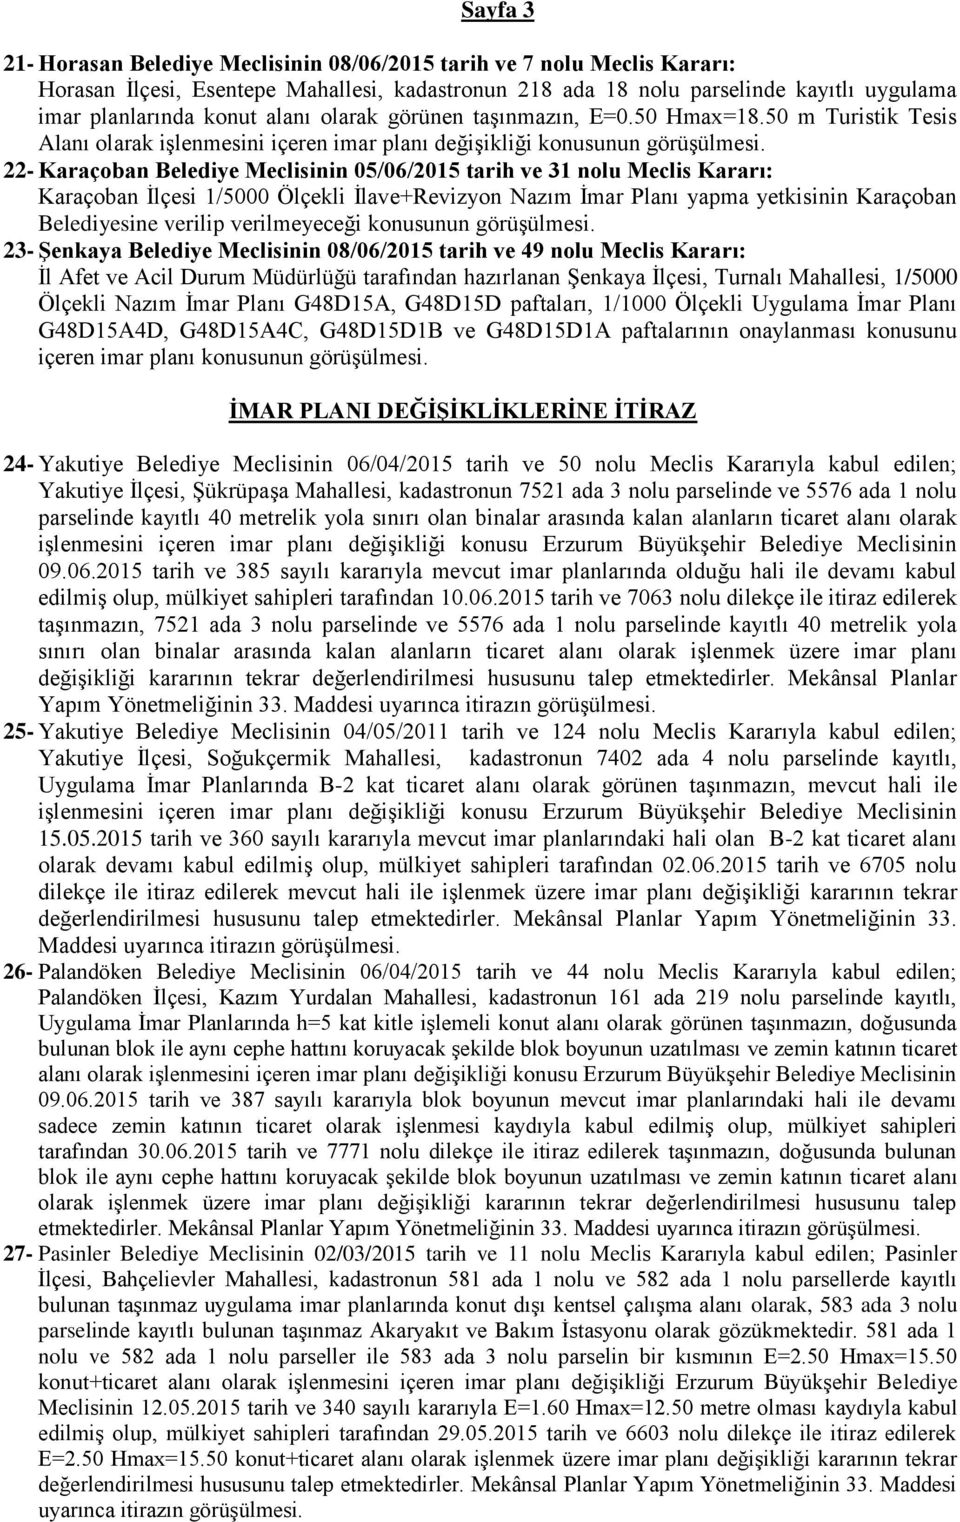 22- Karaçoban Belediye Meclisinin 05/06/2015 tarih ve 31 nolu Meclis Kararı: Karaçoban İlçesi 1/5000 Ölçekli İlave+Revizyon Nazım İmar Planı yapma yetkisinin Karaçoban Belediyesine verilip